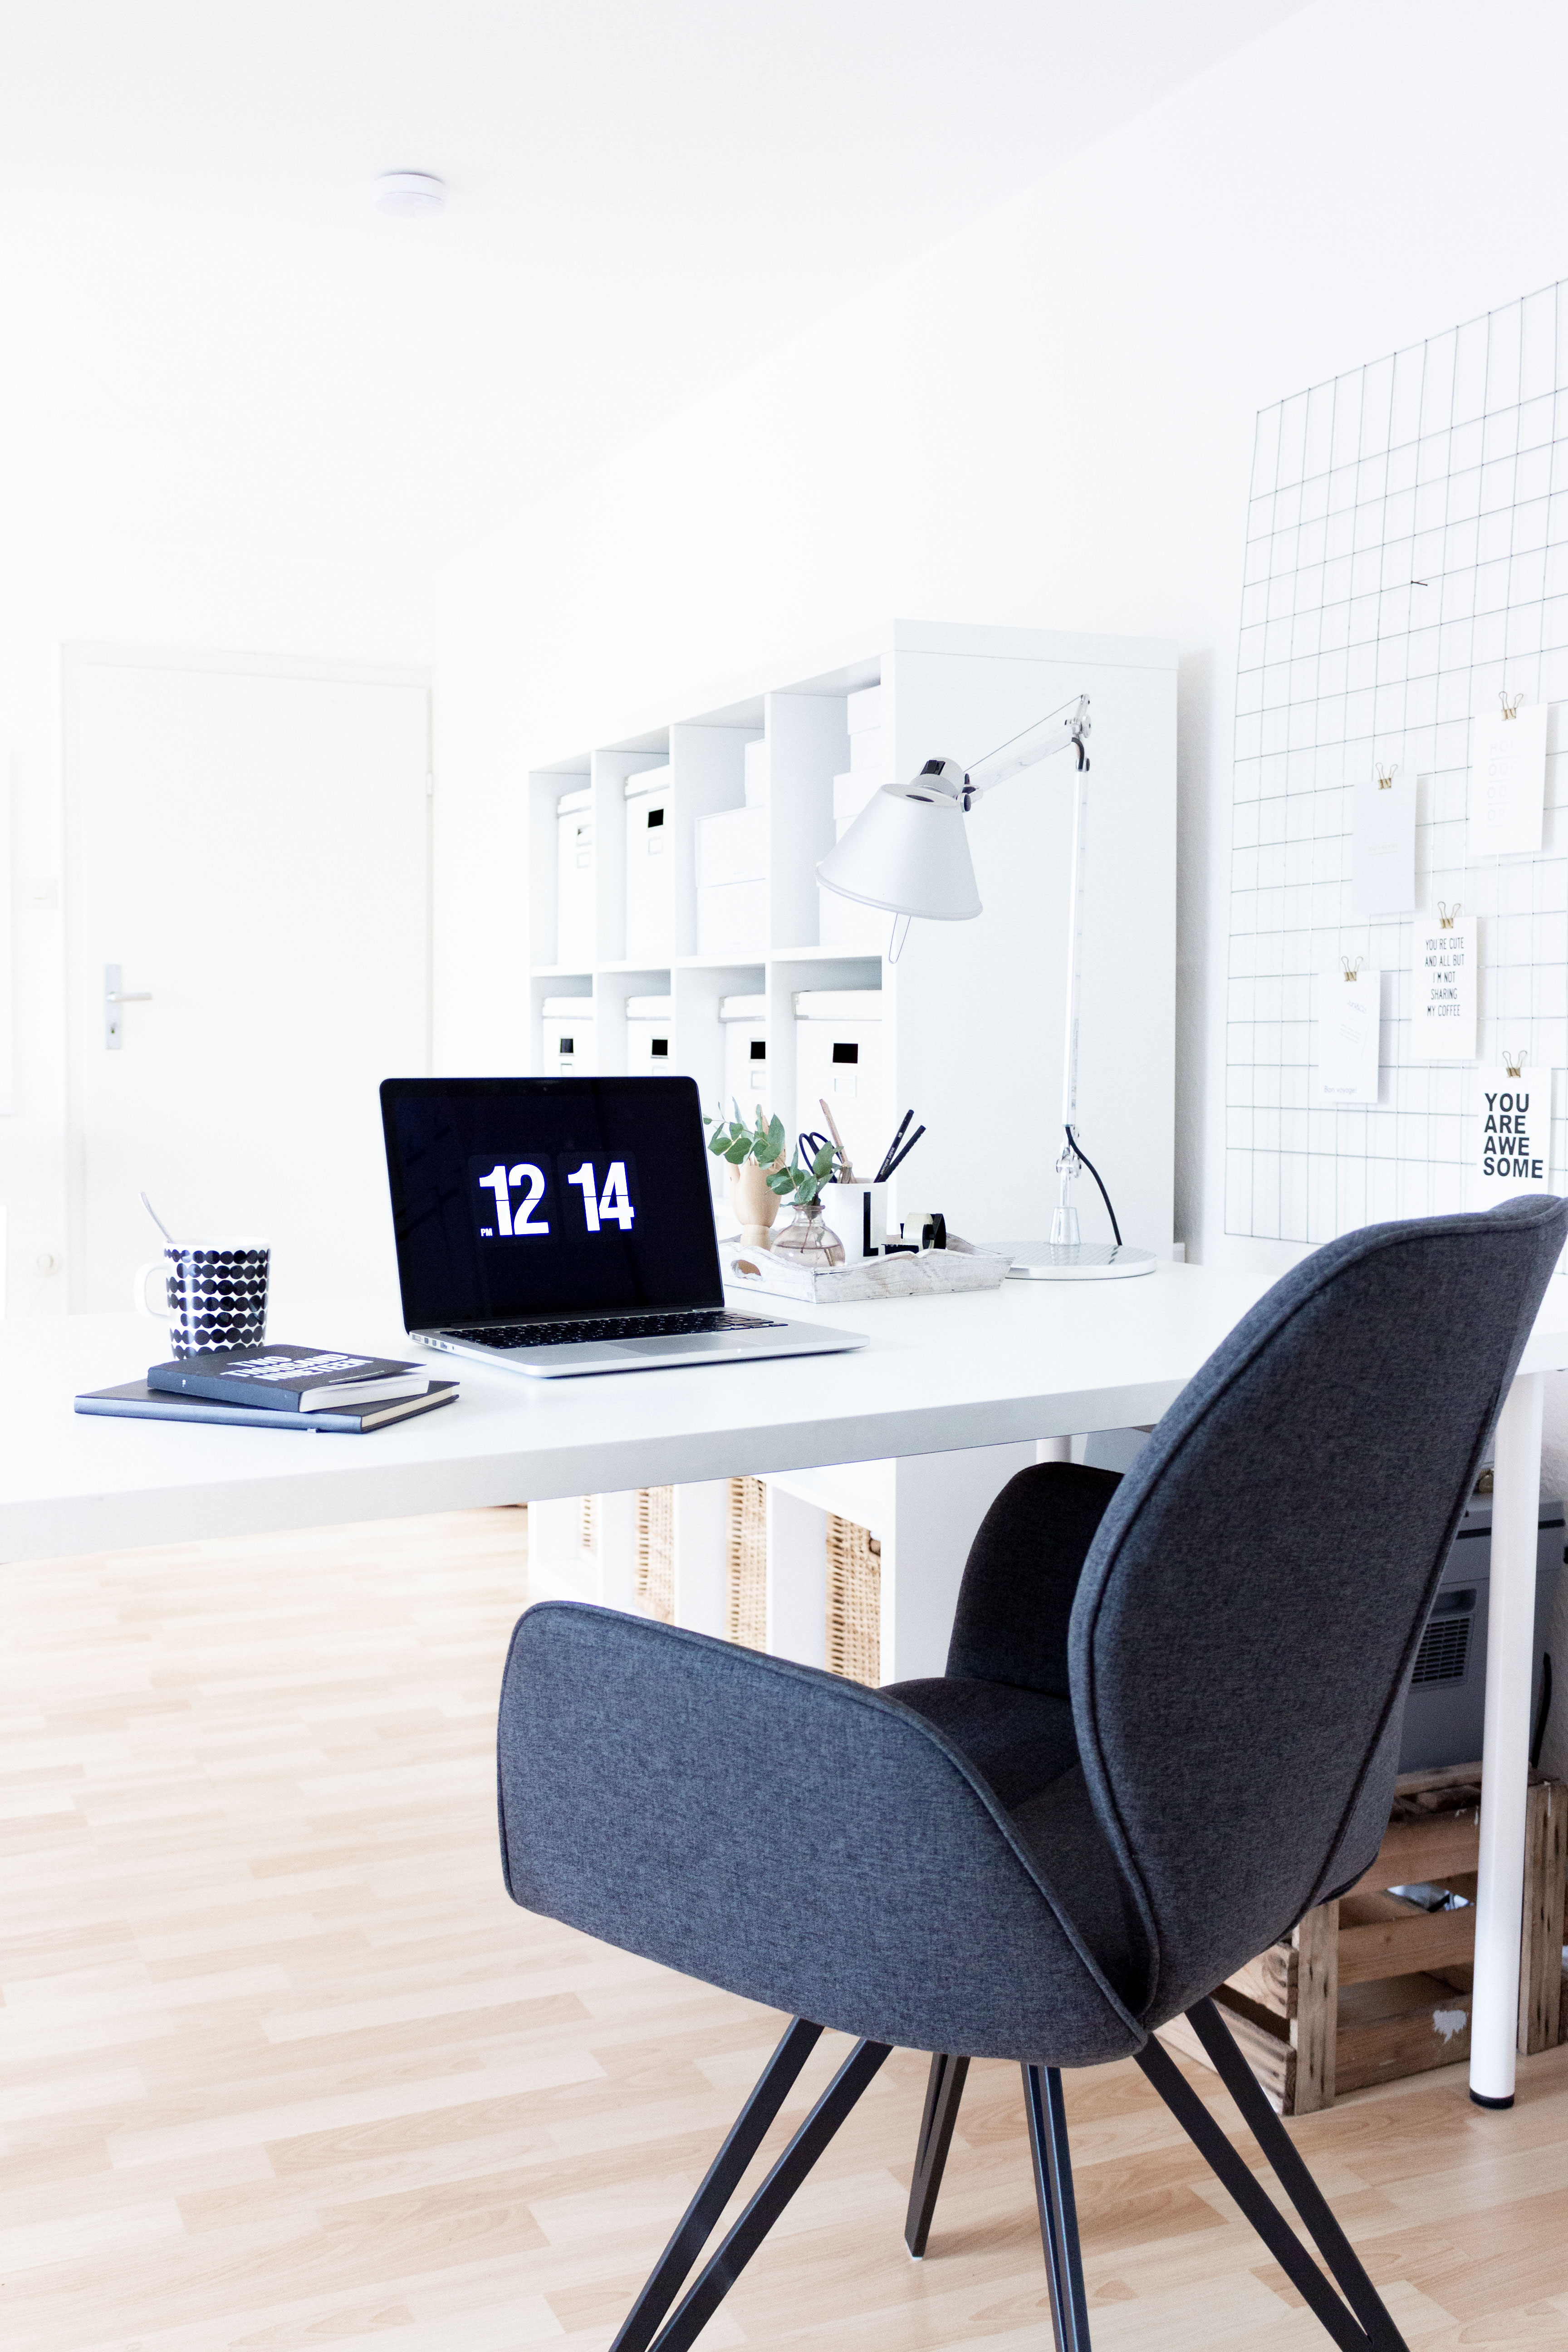 Interior | Home Office Update mit einem bequemen Stuhl von Manuu Möbel | www.scandiinspiration.com